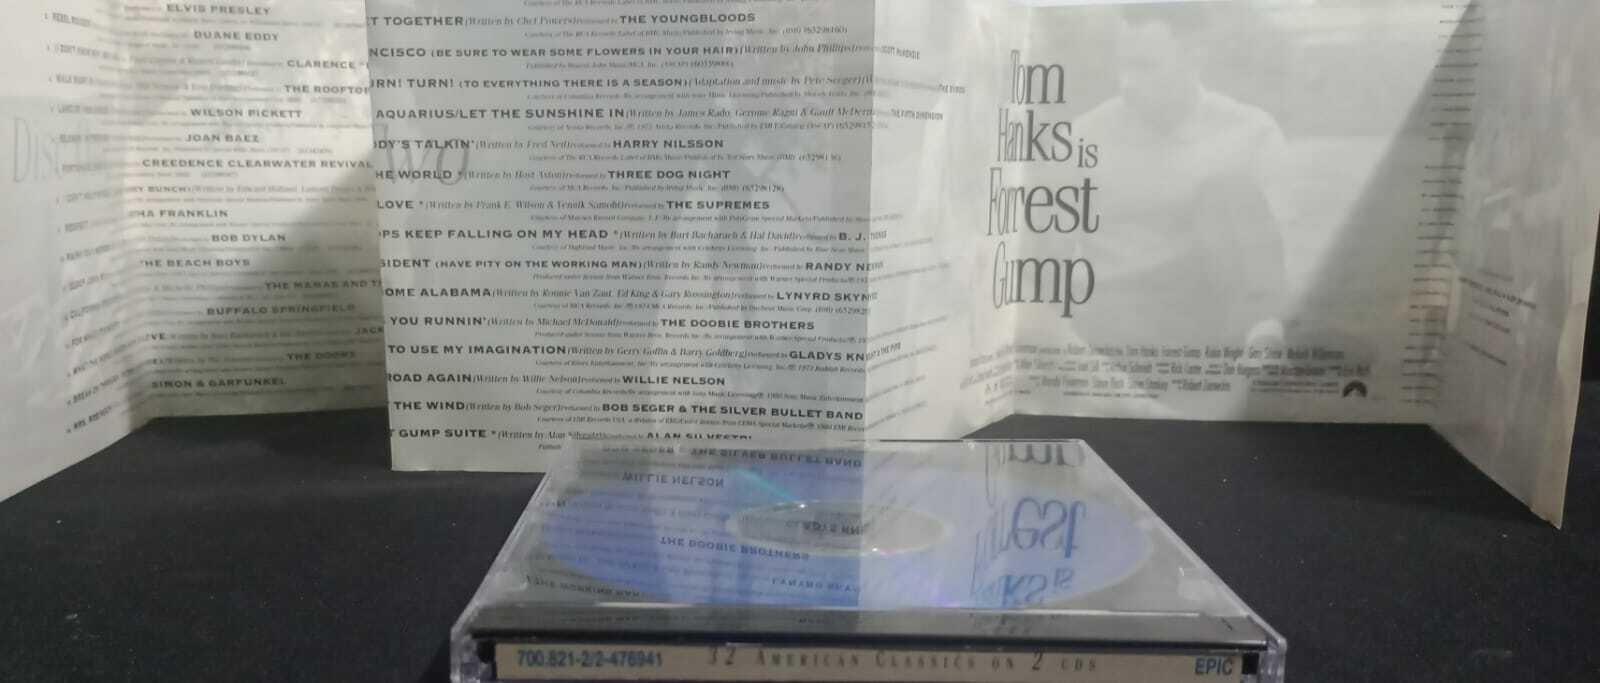 CD - Forrest Gump - The Soundtrack (Duplo)